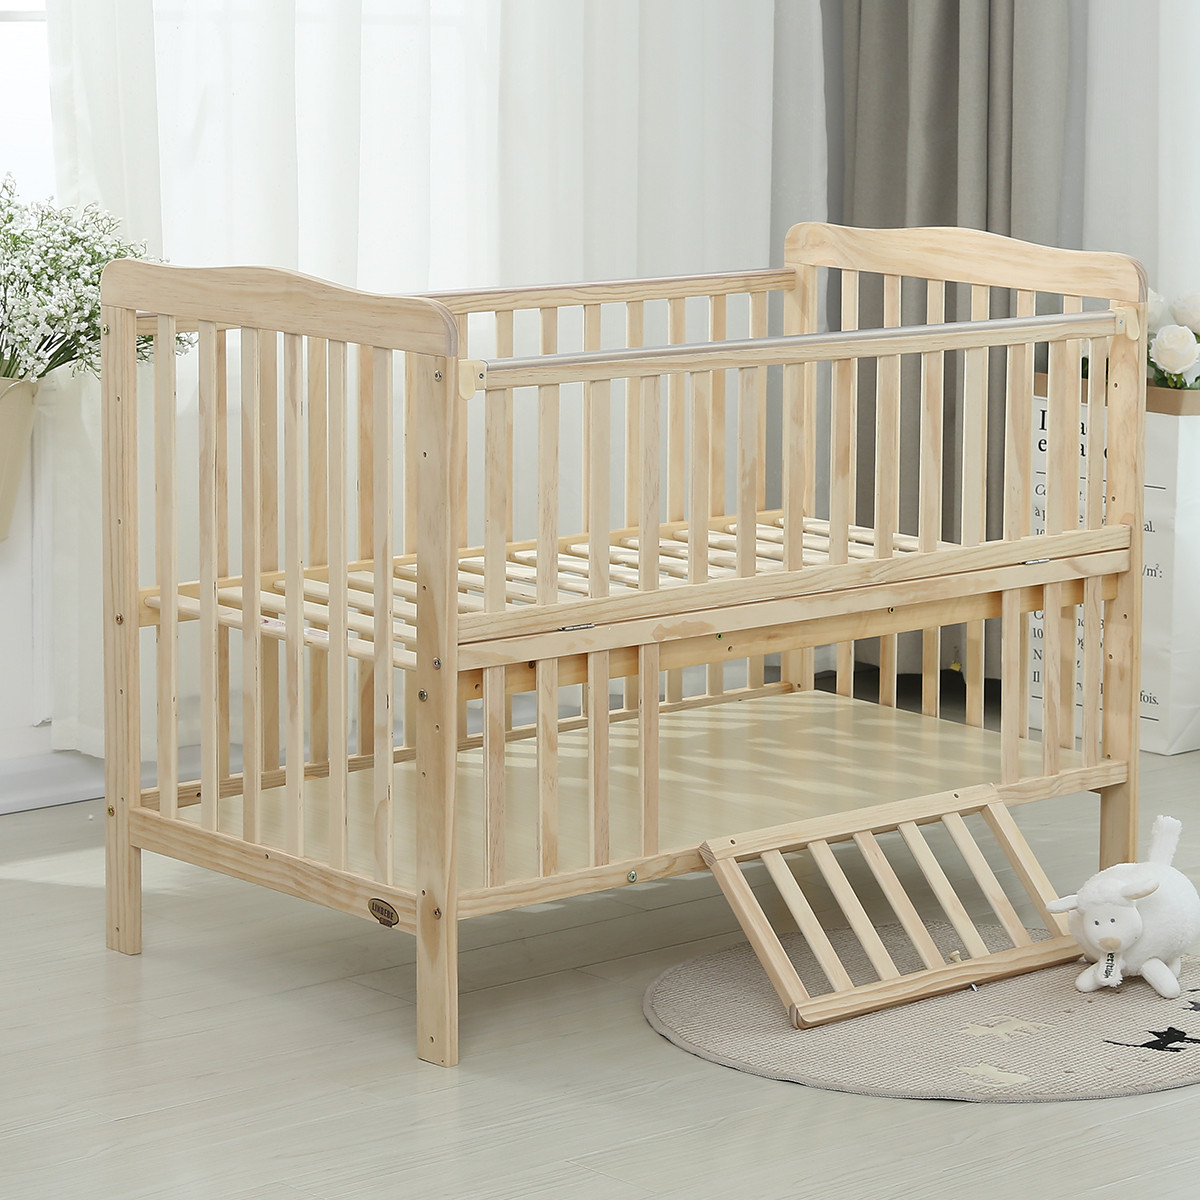 魔法师婴儿床天然木质宝宝床婴儿便携式新生儿床中床宝宝拼接大床